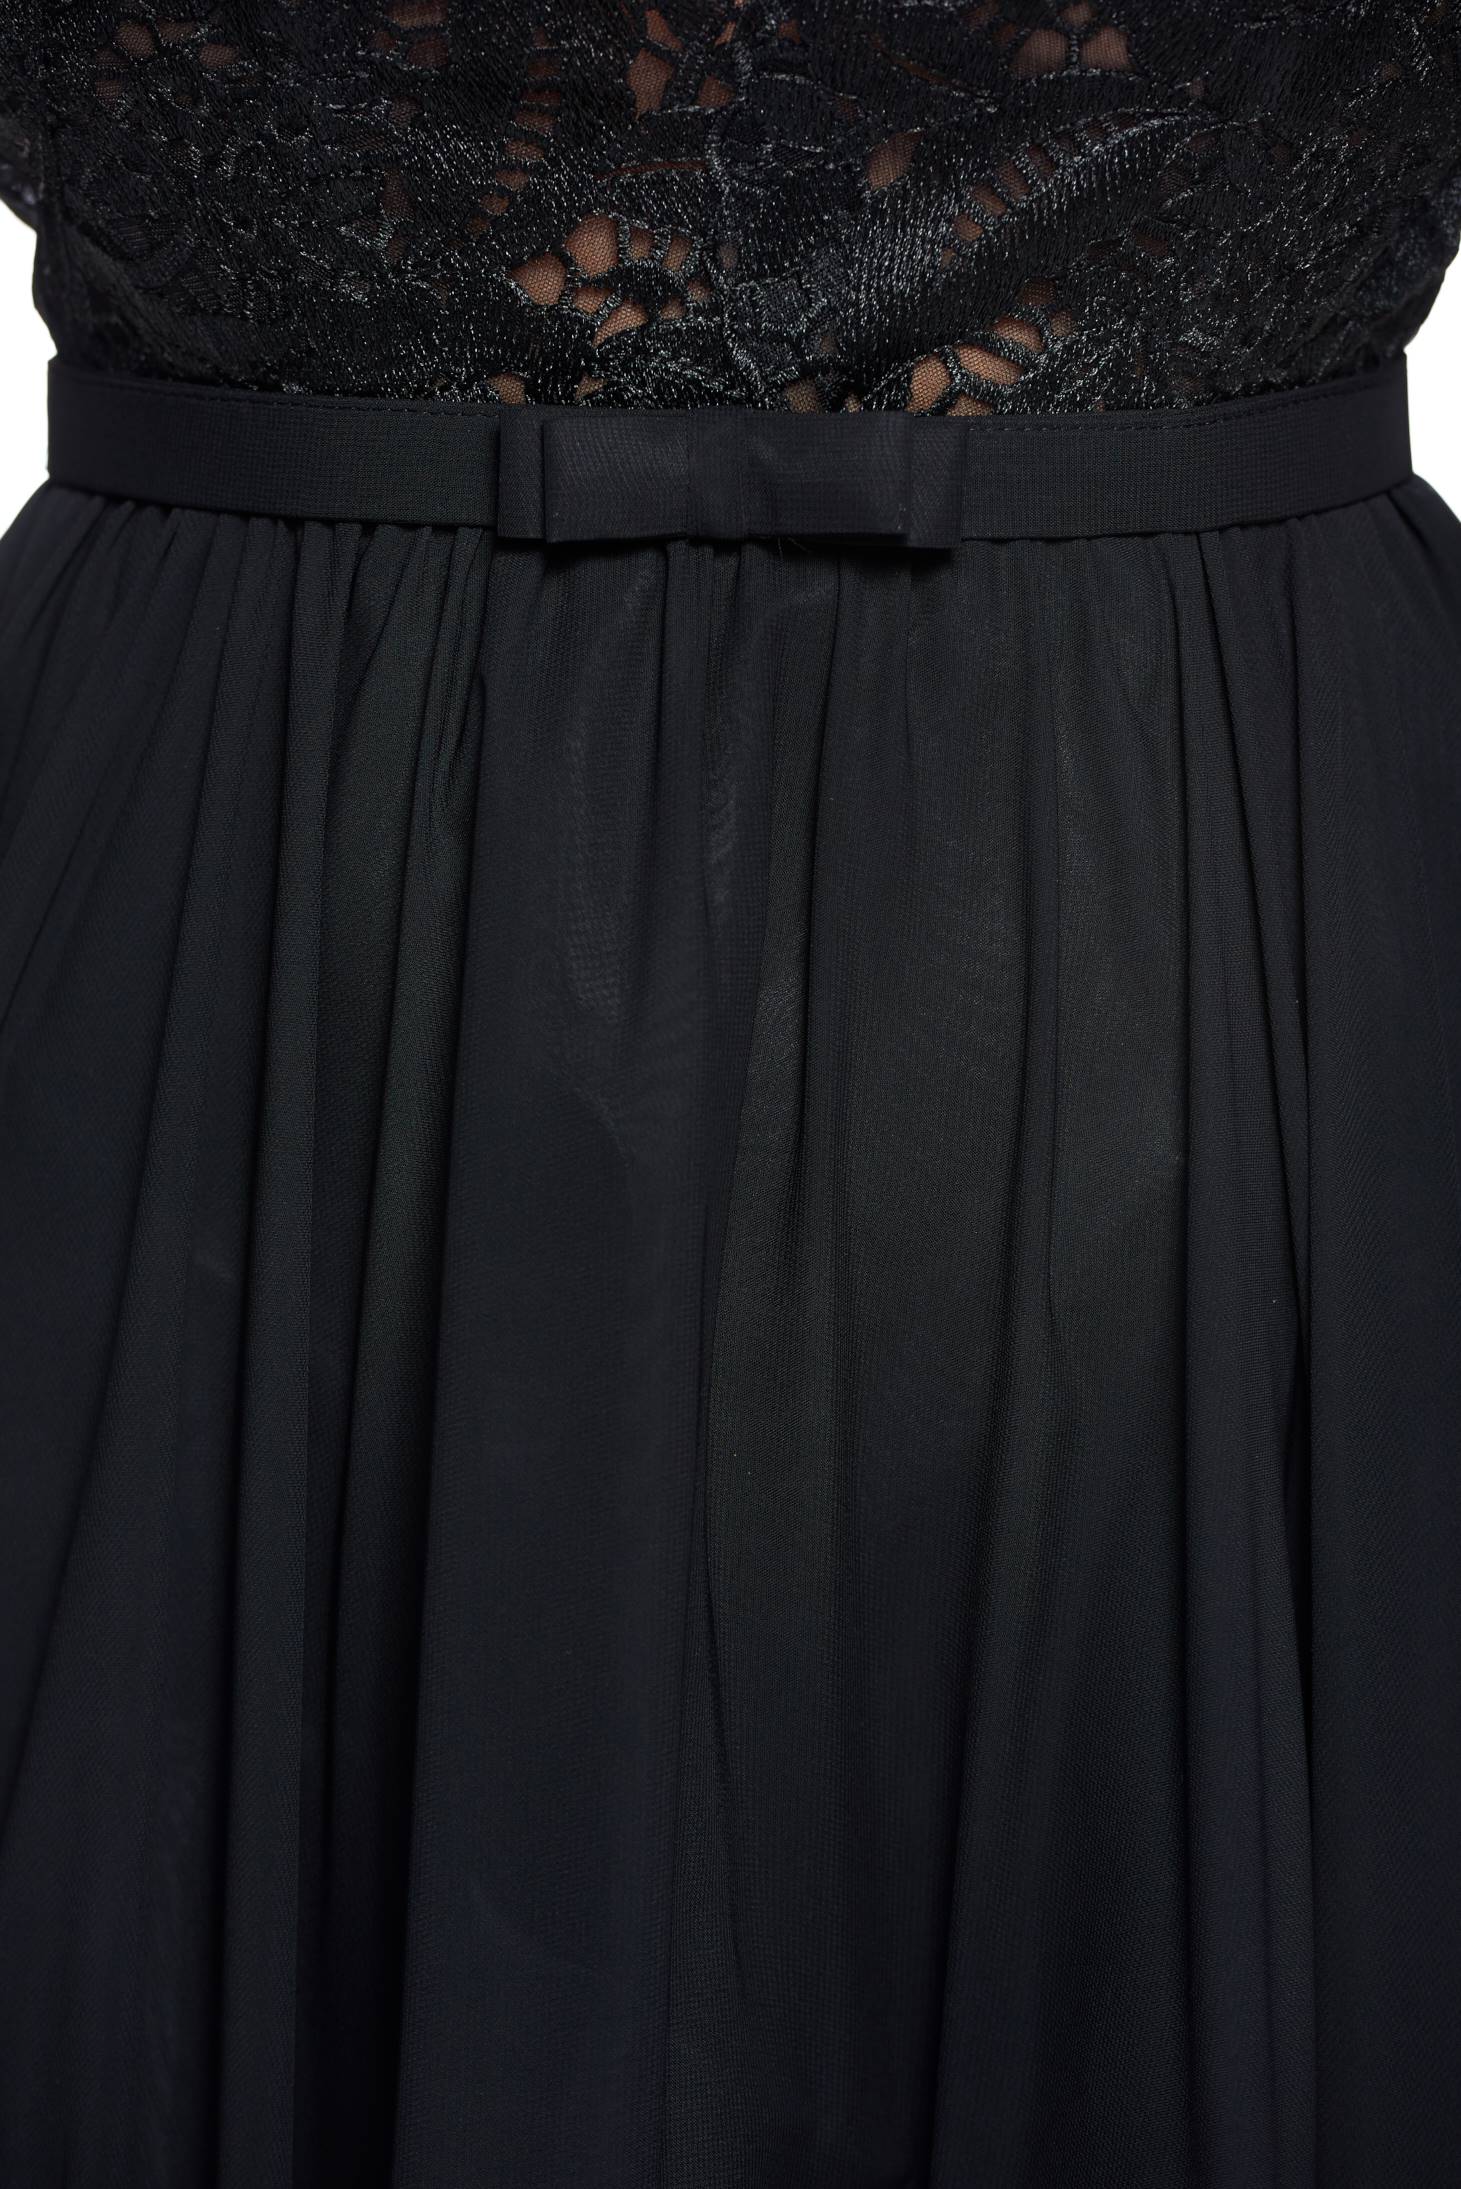 Ana Radu Principessa Black Dress